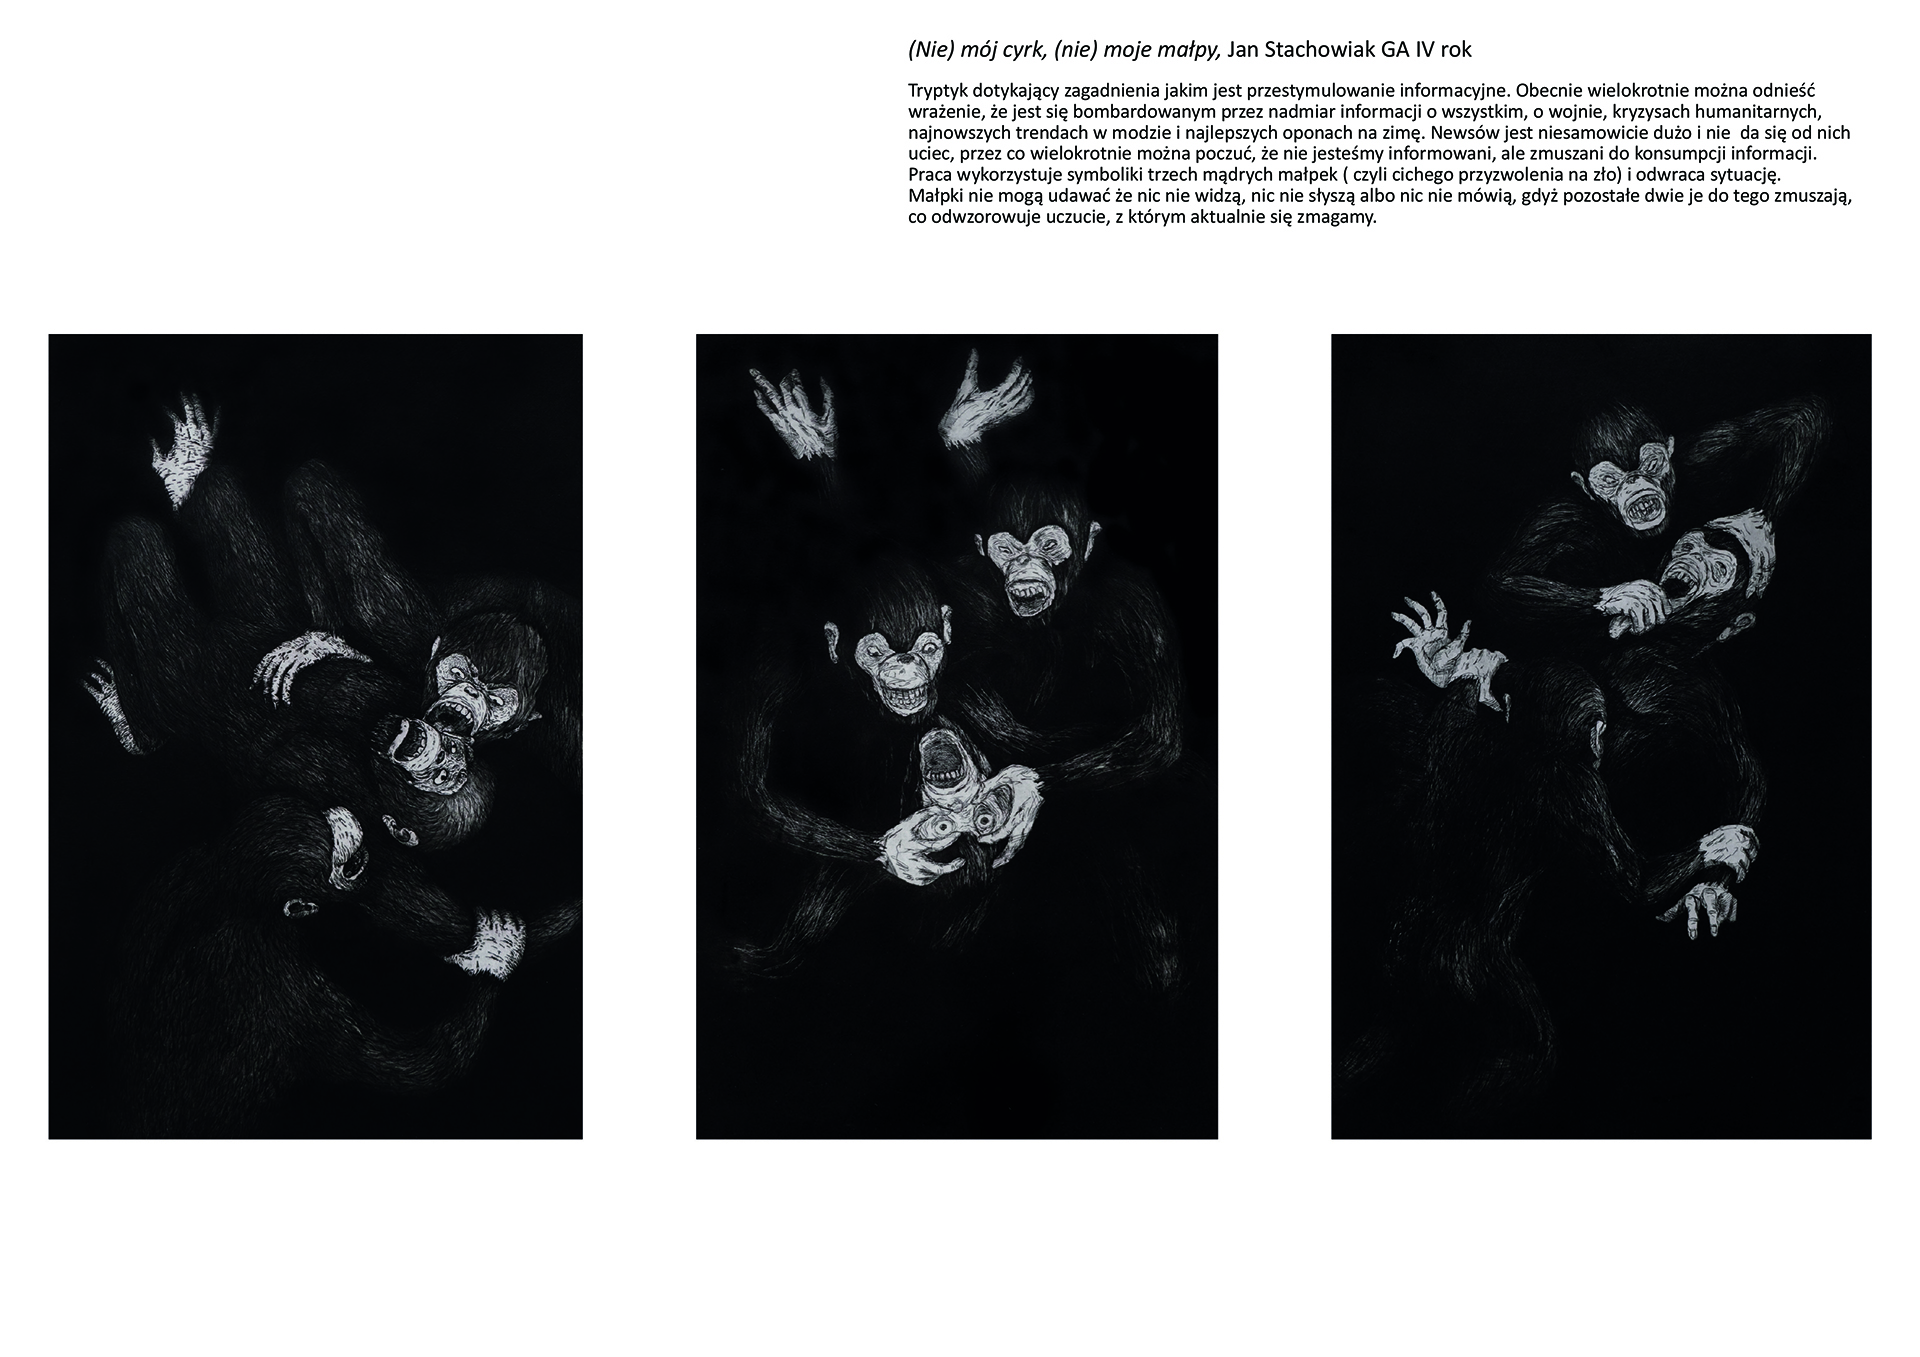 Tytuł: (Nie) mój cyrk, (nie) moje małpy. Autor: Jan Stachowiak. Trzy grafiki w skali szarości przedstawiające grupę trzech małp na każdej, kolejno: gryzące się wzajemnie, wydłubujące sobie nawzajem oczy, ciągnące siebie nawzajem za język. 